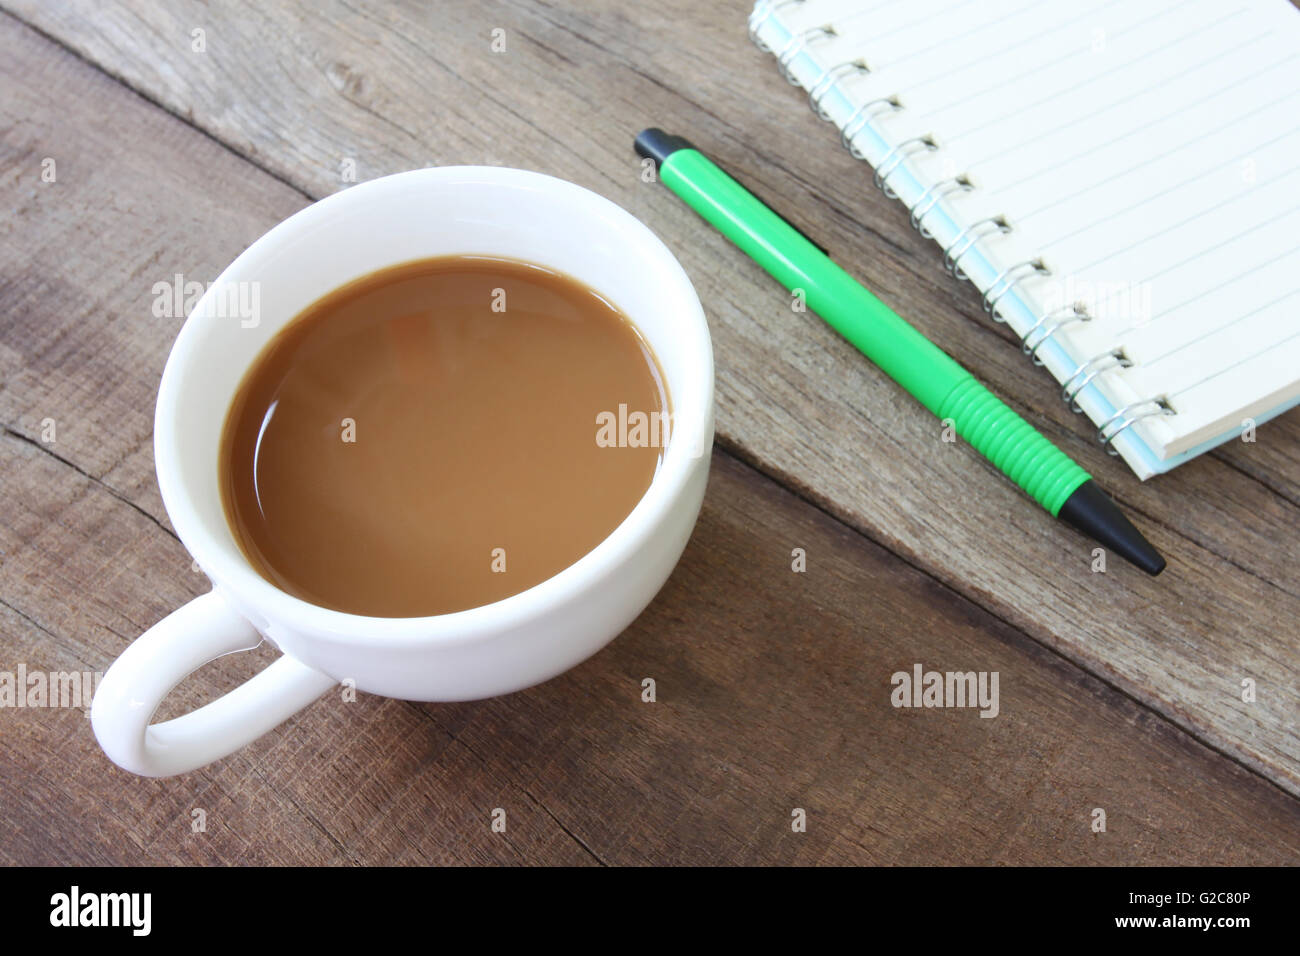 Tasse à café et blanc ont vide,livre stylo vert sur un sol en bois et le concept de boisson. Banque D'Images